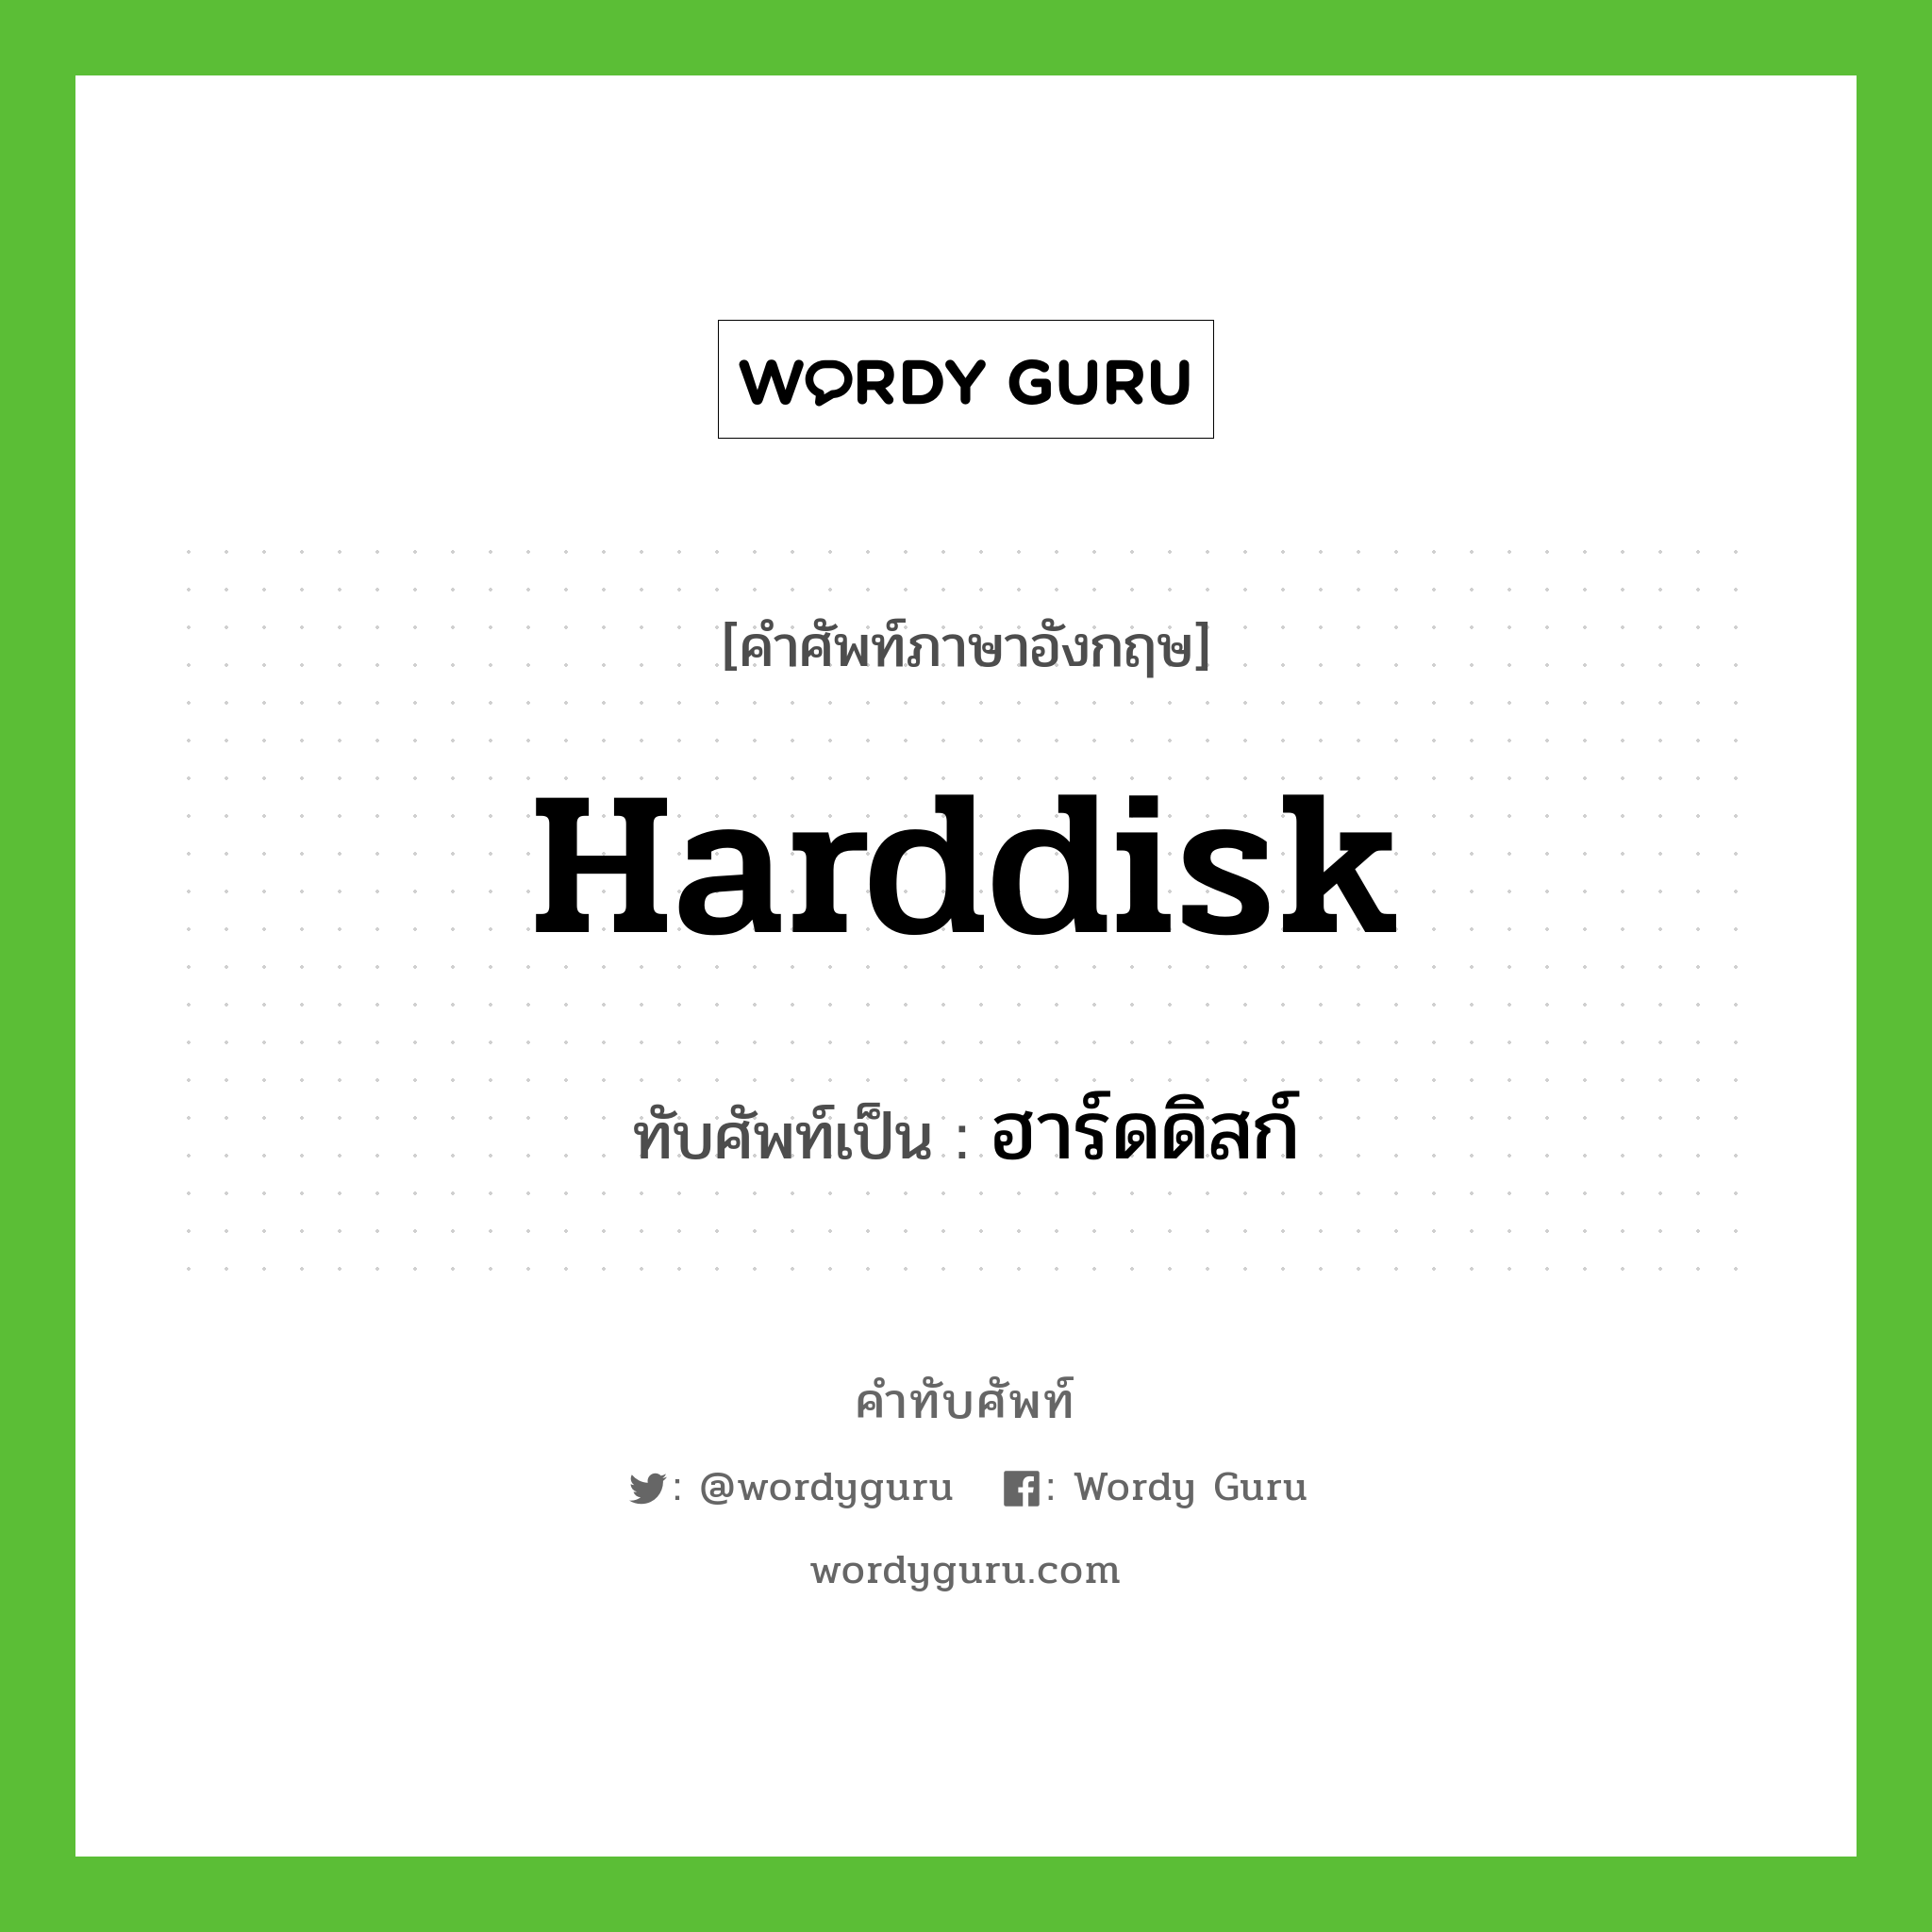 harddisk เขียนเป็นคำไทยว่าอะไร?, คำศัพท์ภาษาอังกฤษ harddisk ทับศัพท์เป็น ฮาร์ดดิสก์